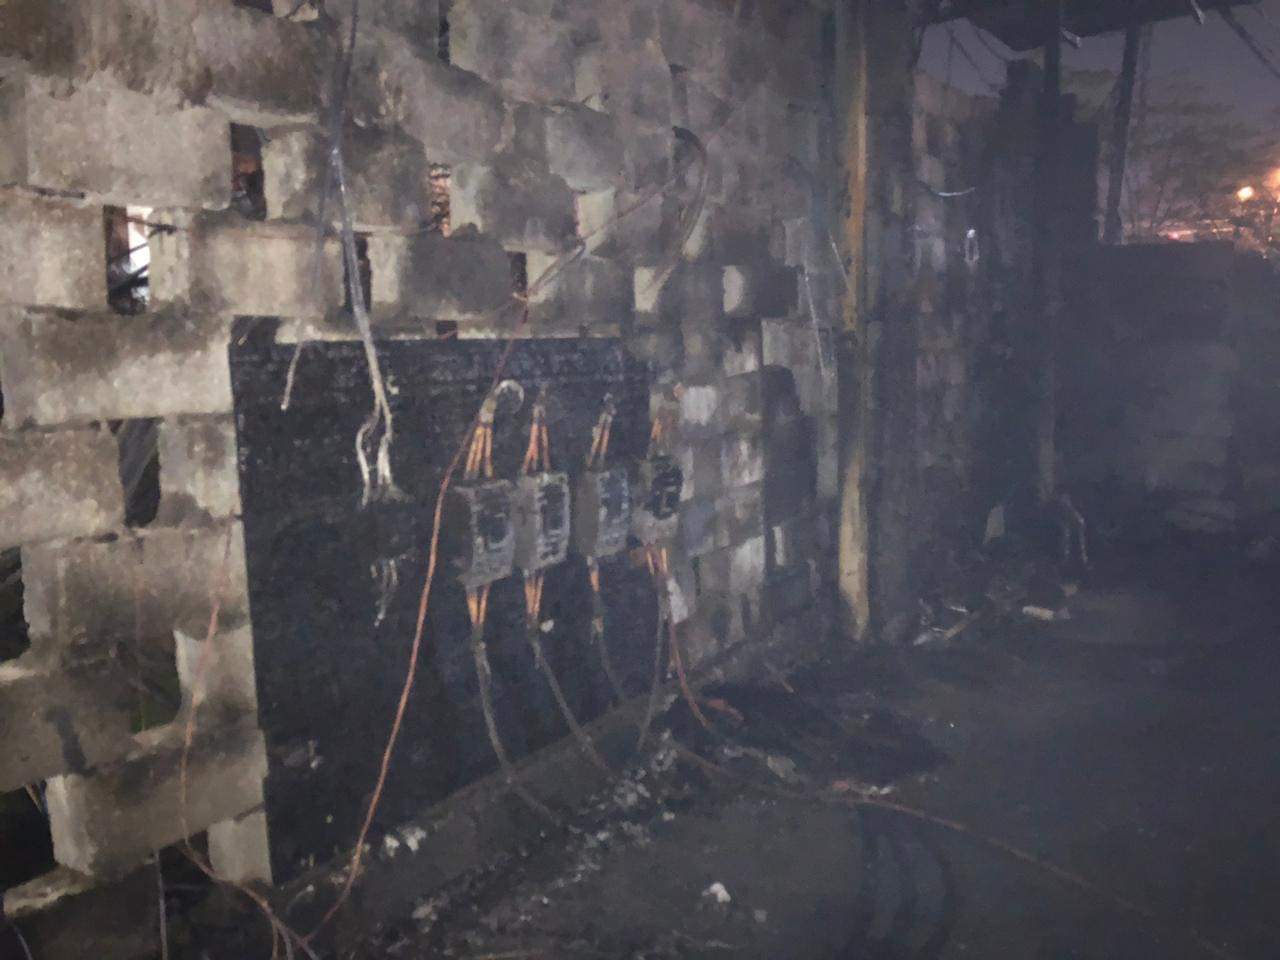  نيران تلتهم مجمعاً للمولدات الكهربائية في كوردستان وتلحق خسائر مادية كبيرة 